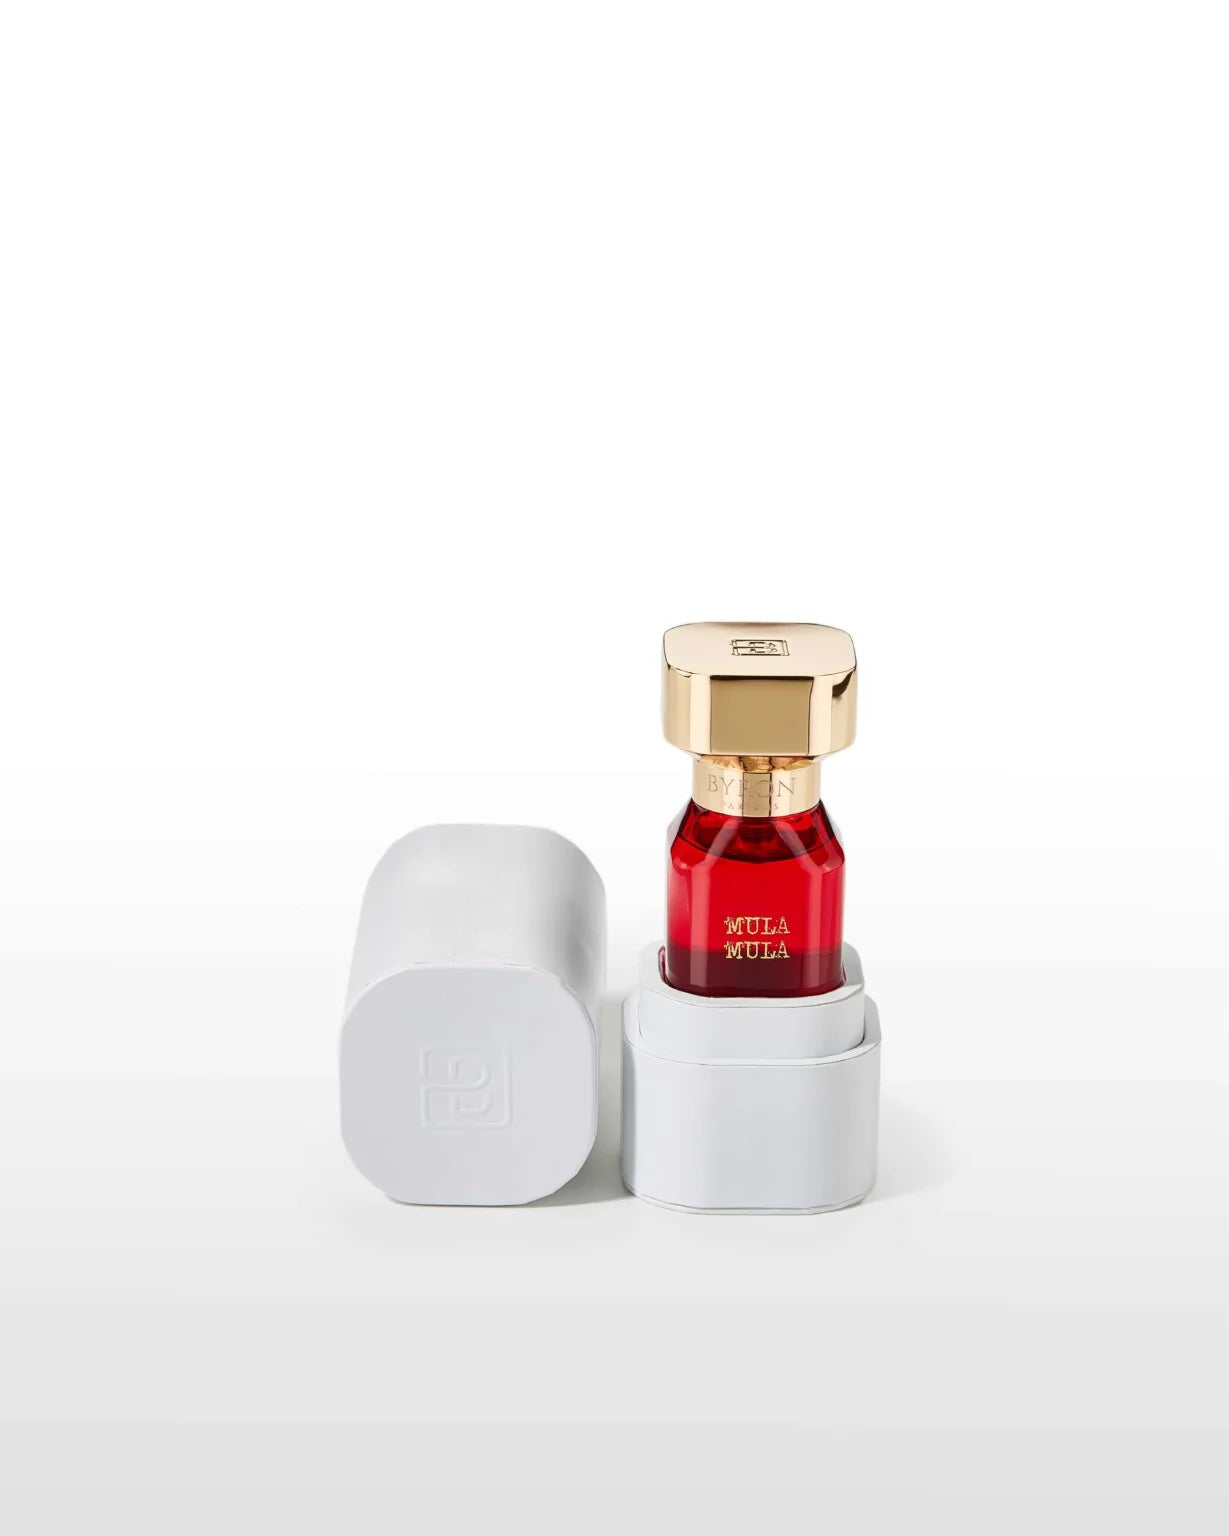 Mula Mula Rouge Extreme Byron Parfums Sample 2ml